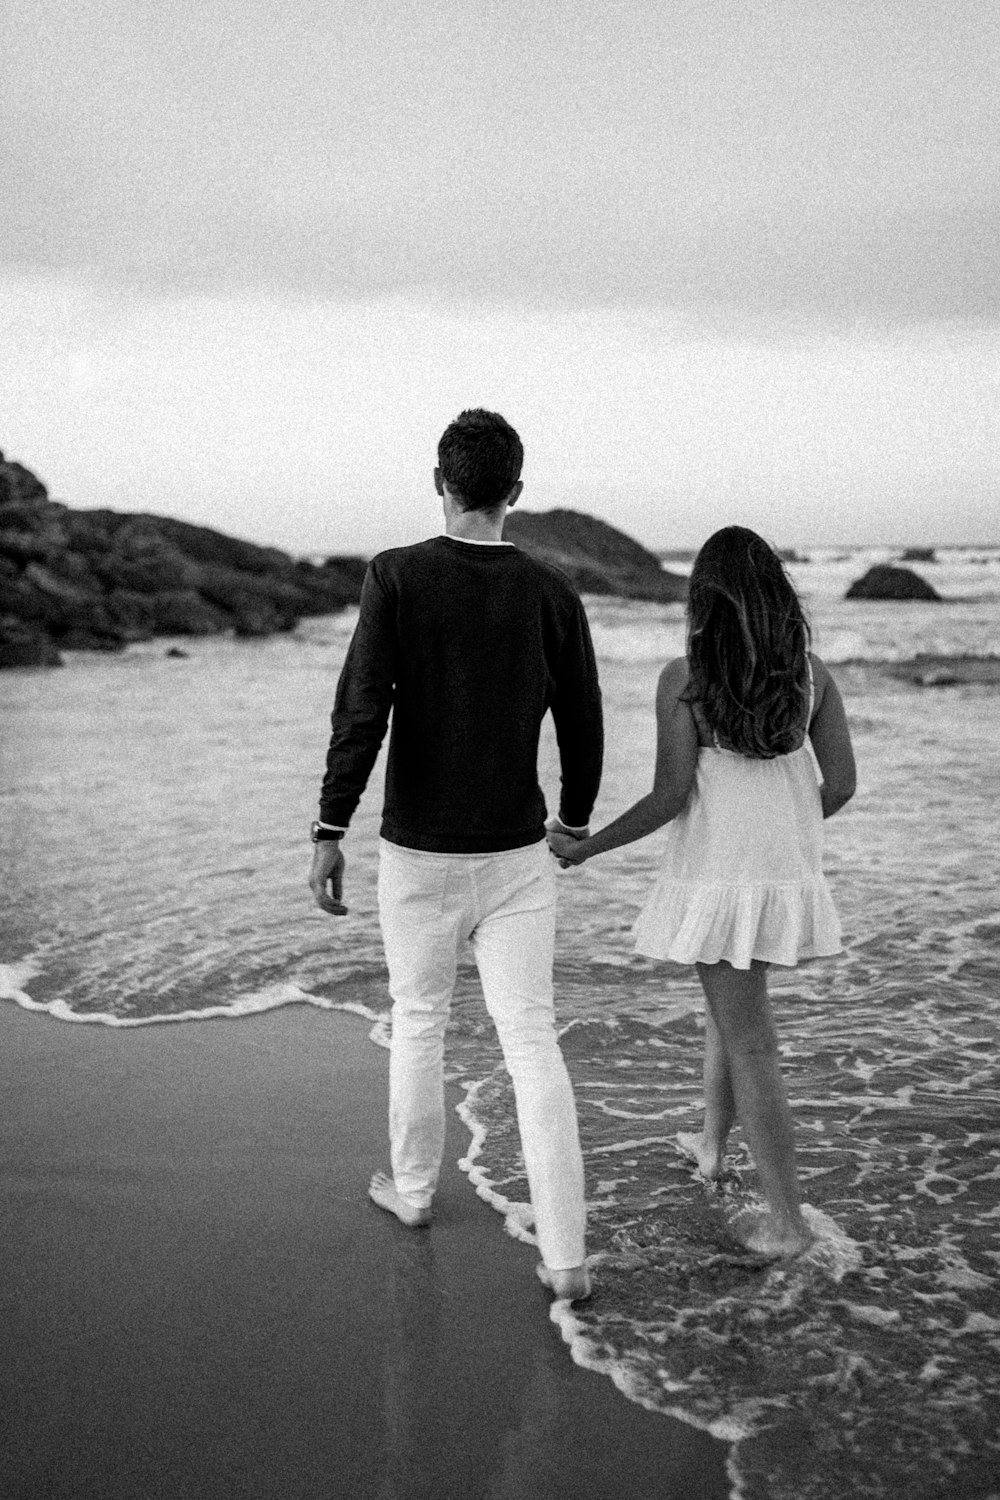 해변을 걷는 동안 손을 잡고 있는 남자와 여자